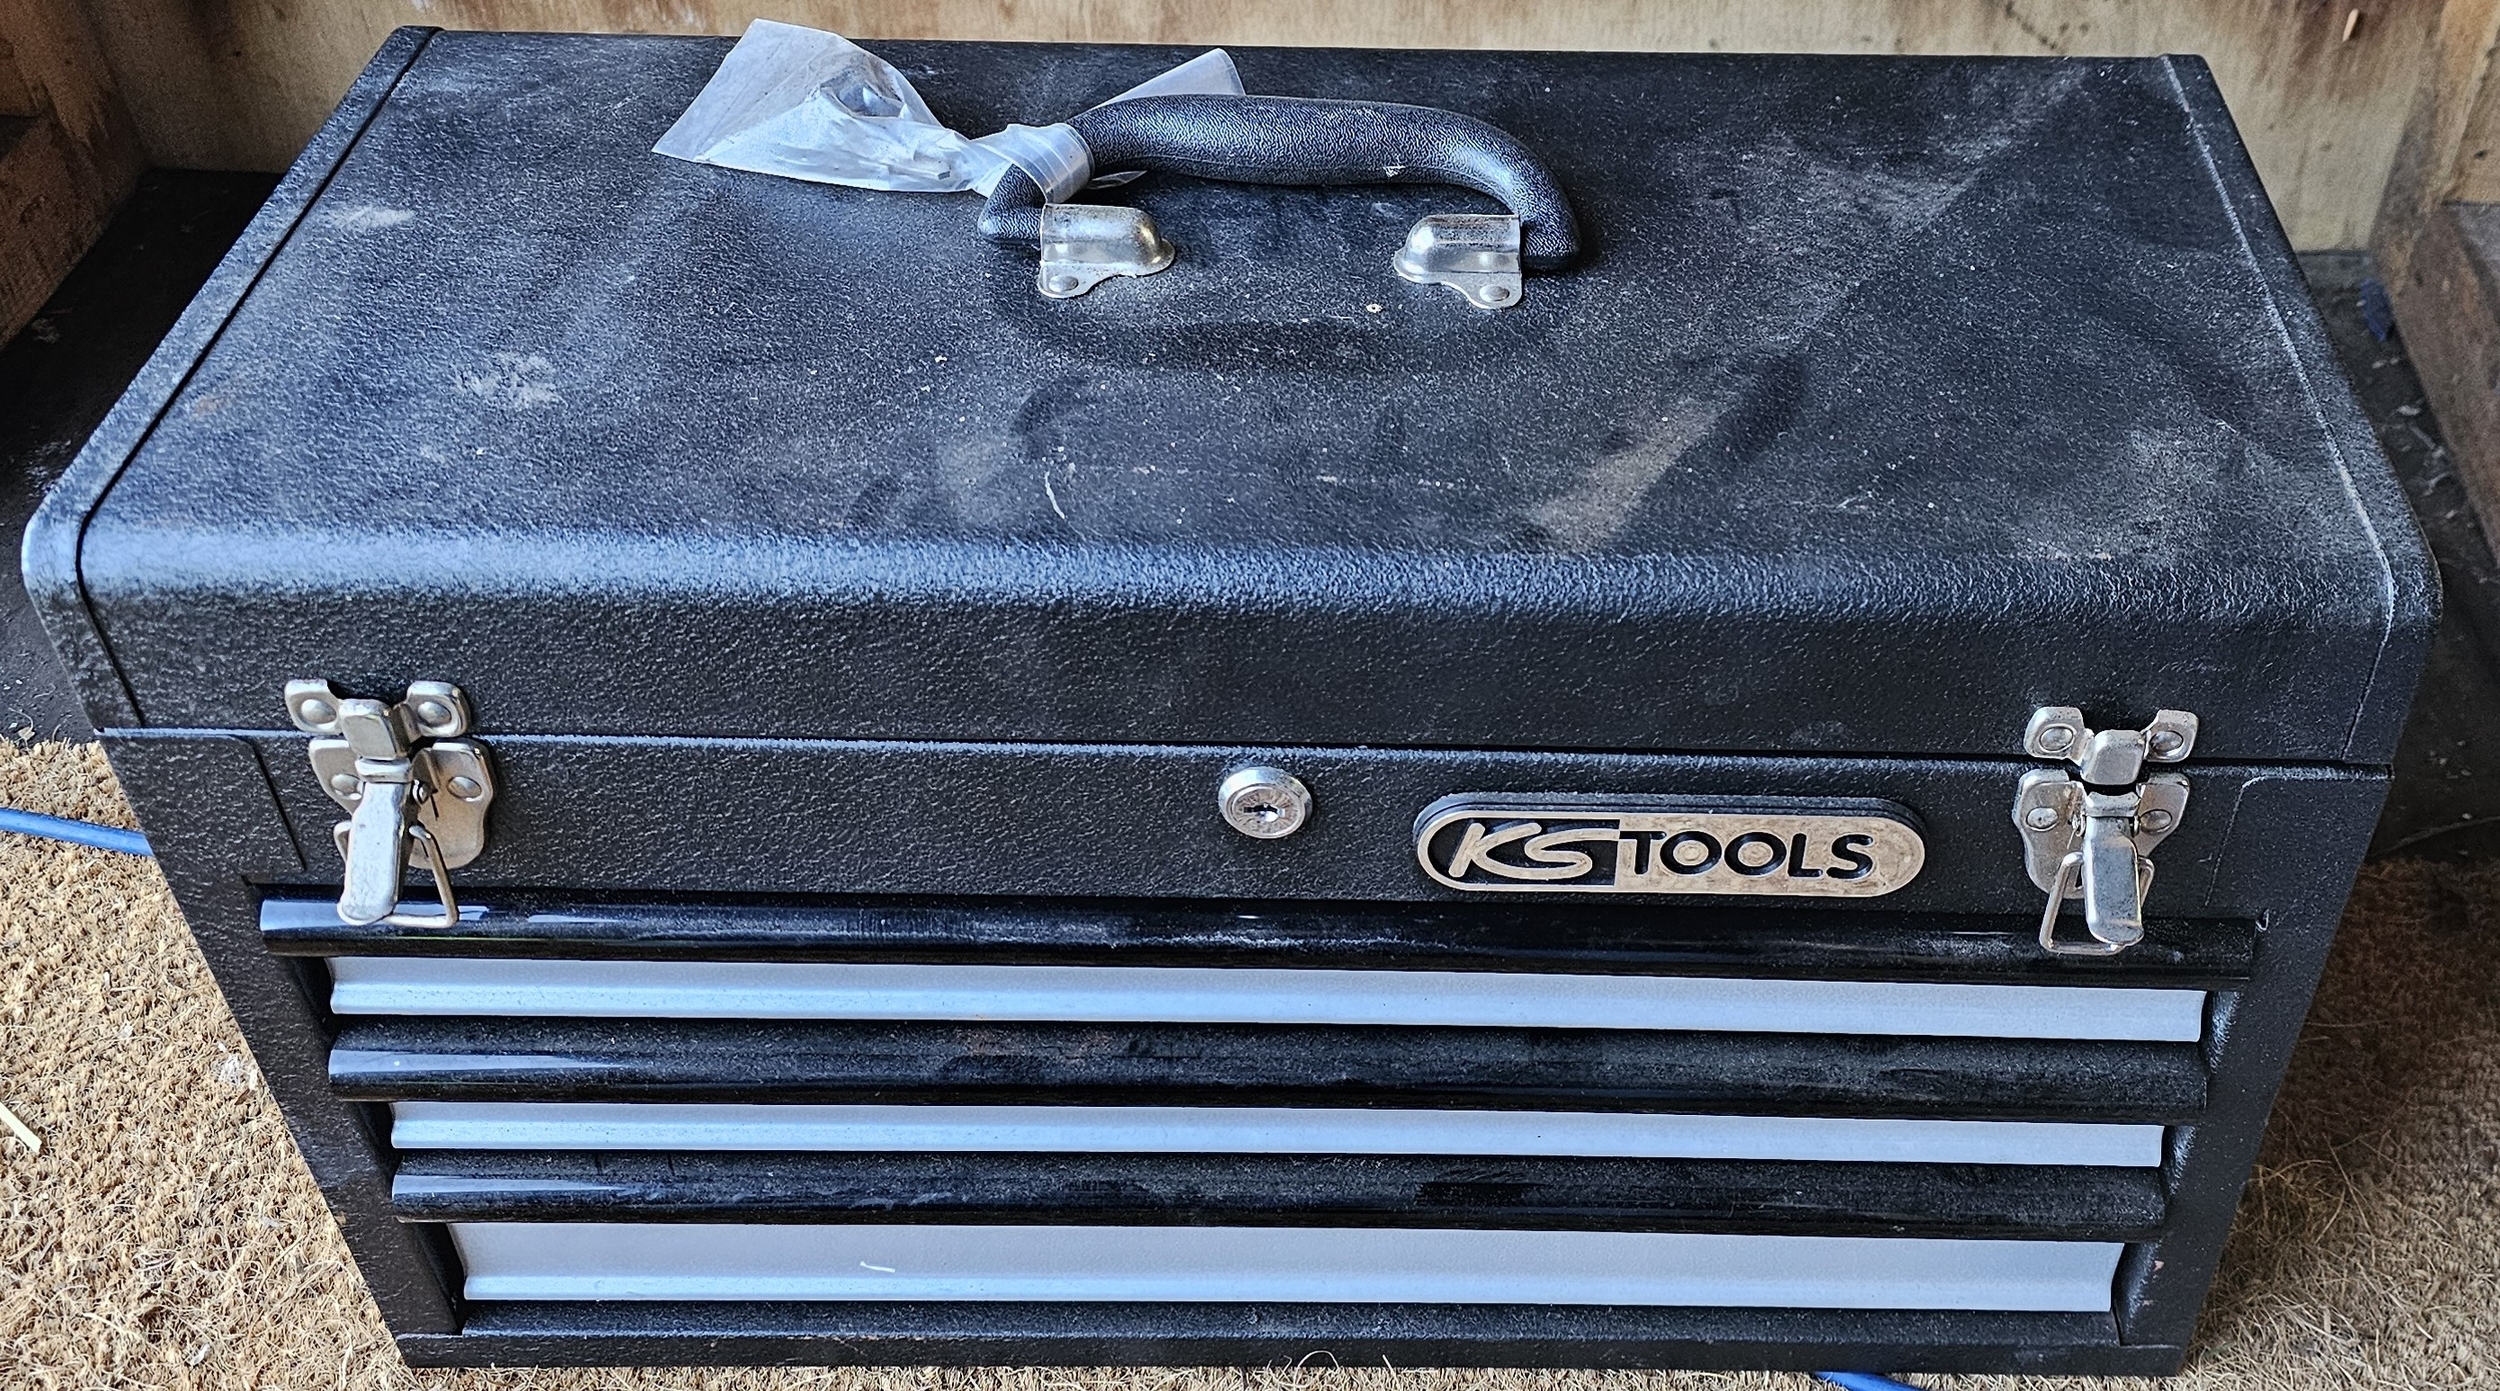 A KS Tools three drawer tool chest, unused - Image 6 of 6